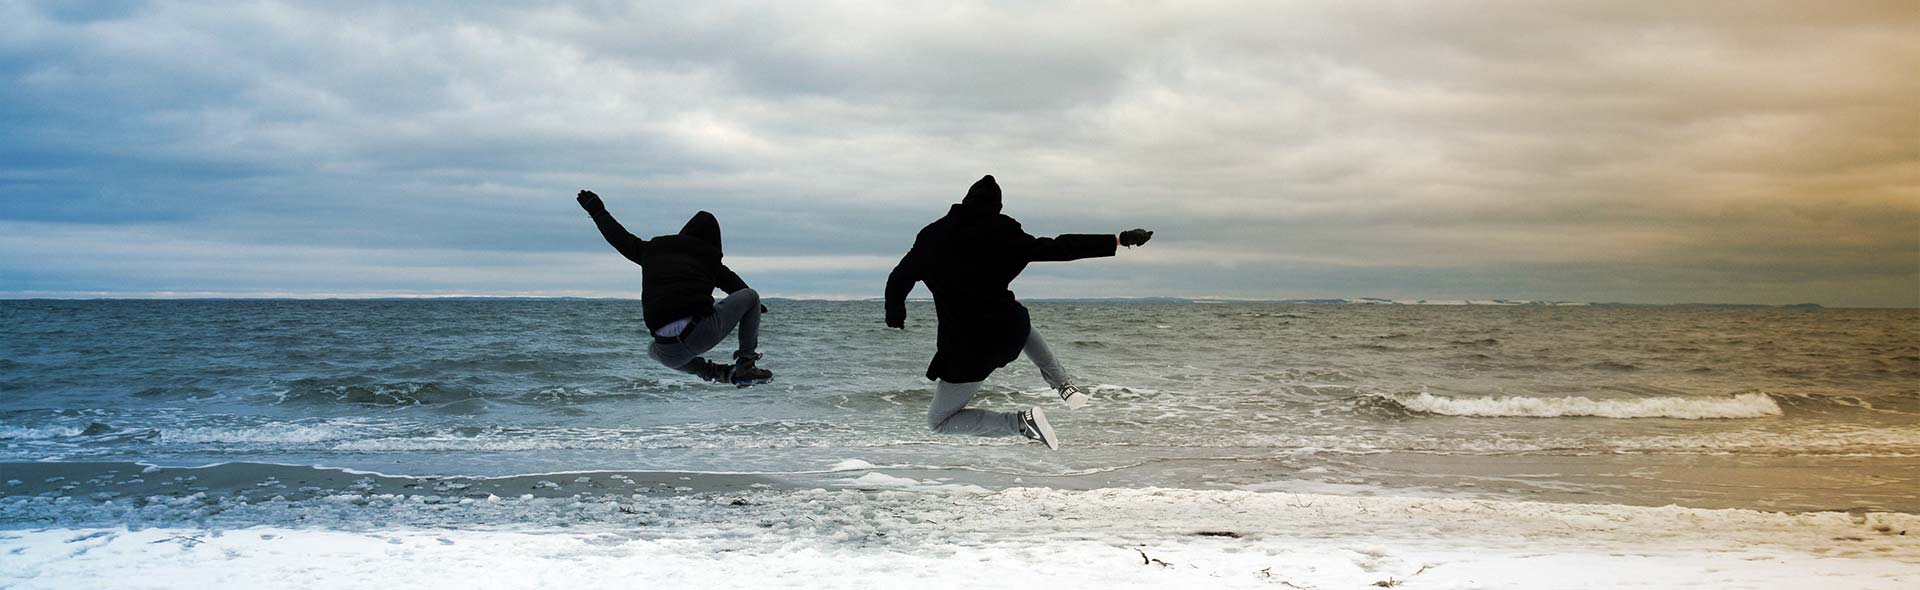 Redaktionsteam: Zwei junge Männer springen mit Wintermontur vor der Ostsee in die Höhee